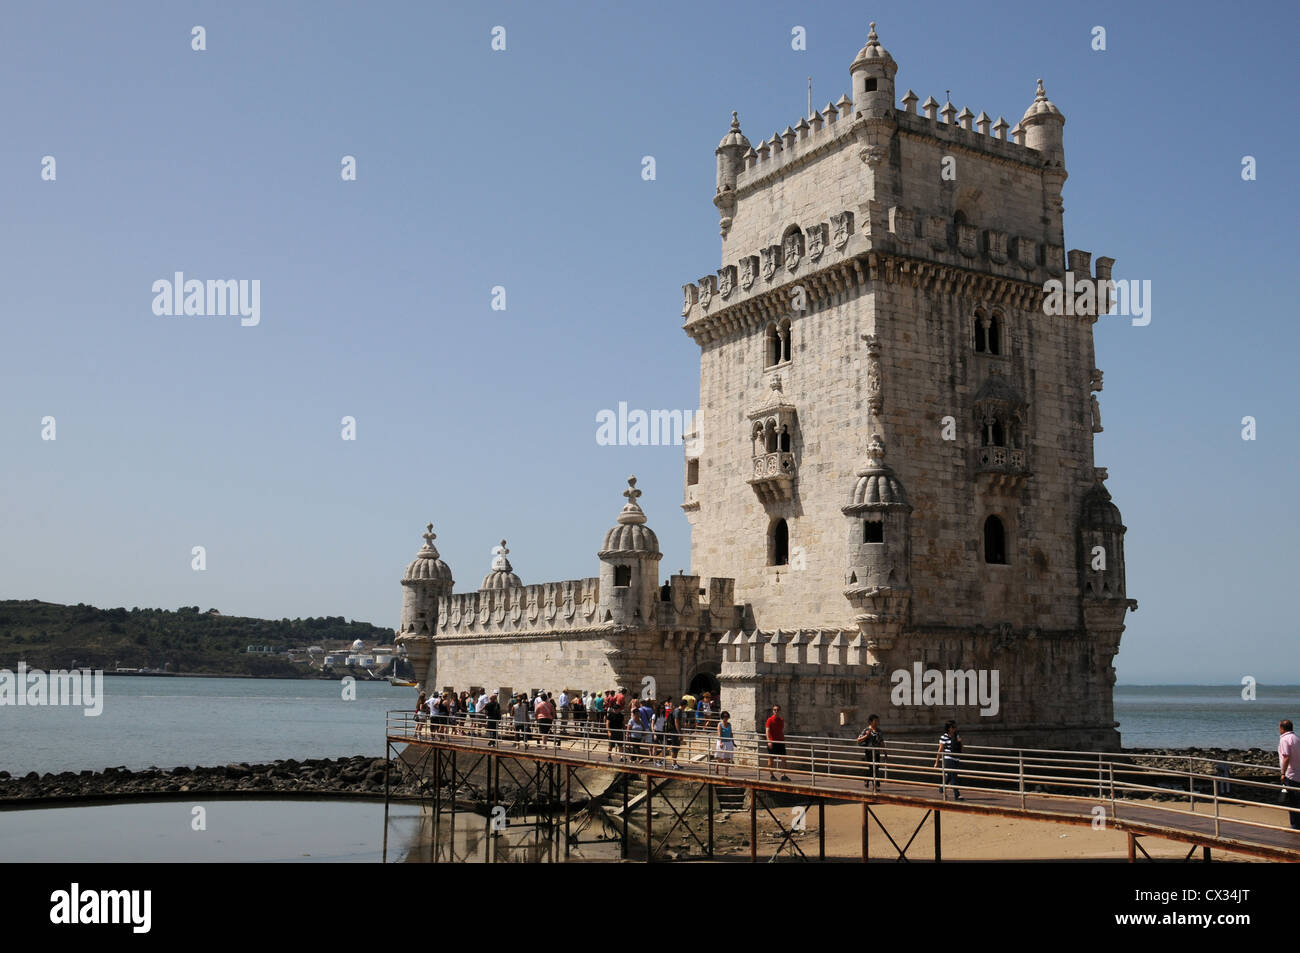 Turm von Belem steht am Ufer des Tejo, Belem, Lissabon, Portugal Stockfoto